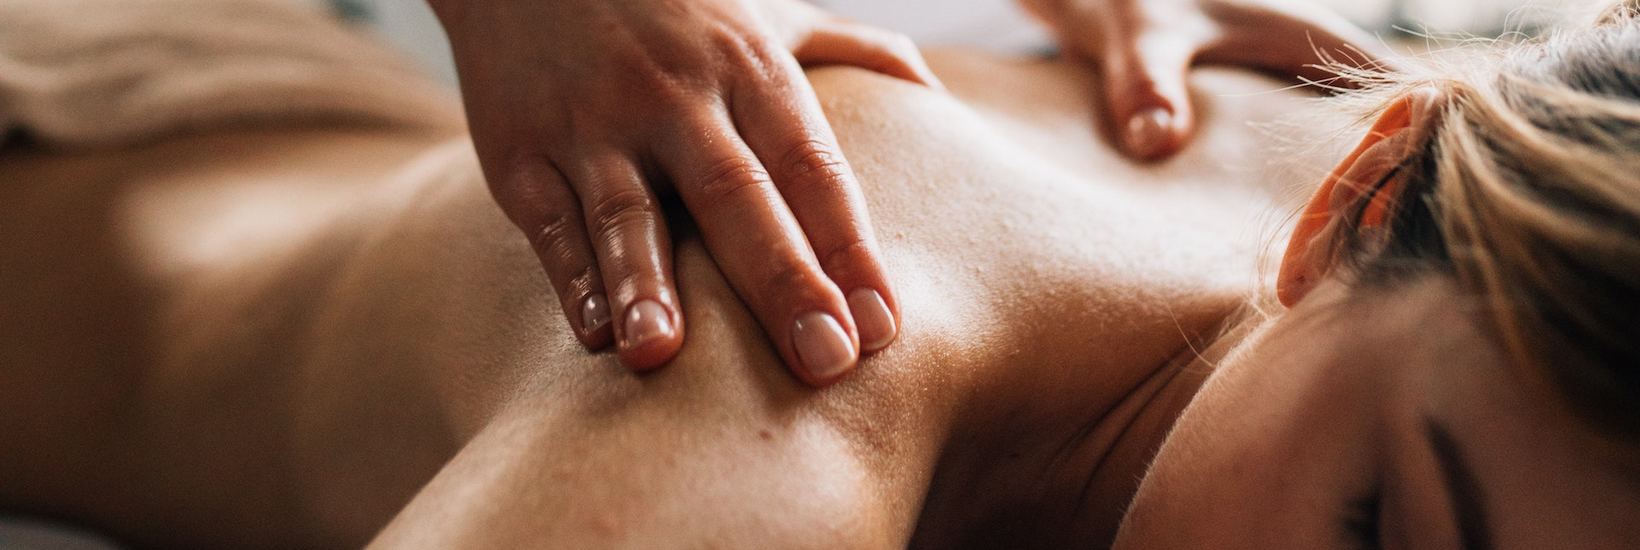 Massieren lernen: So wirst du zum Massage-Meister!